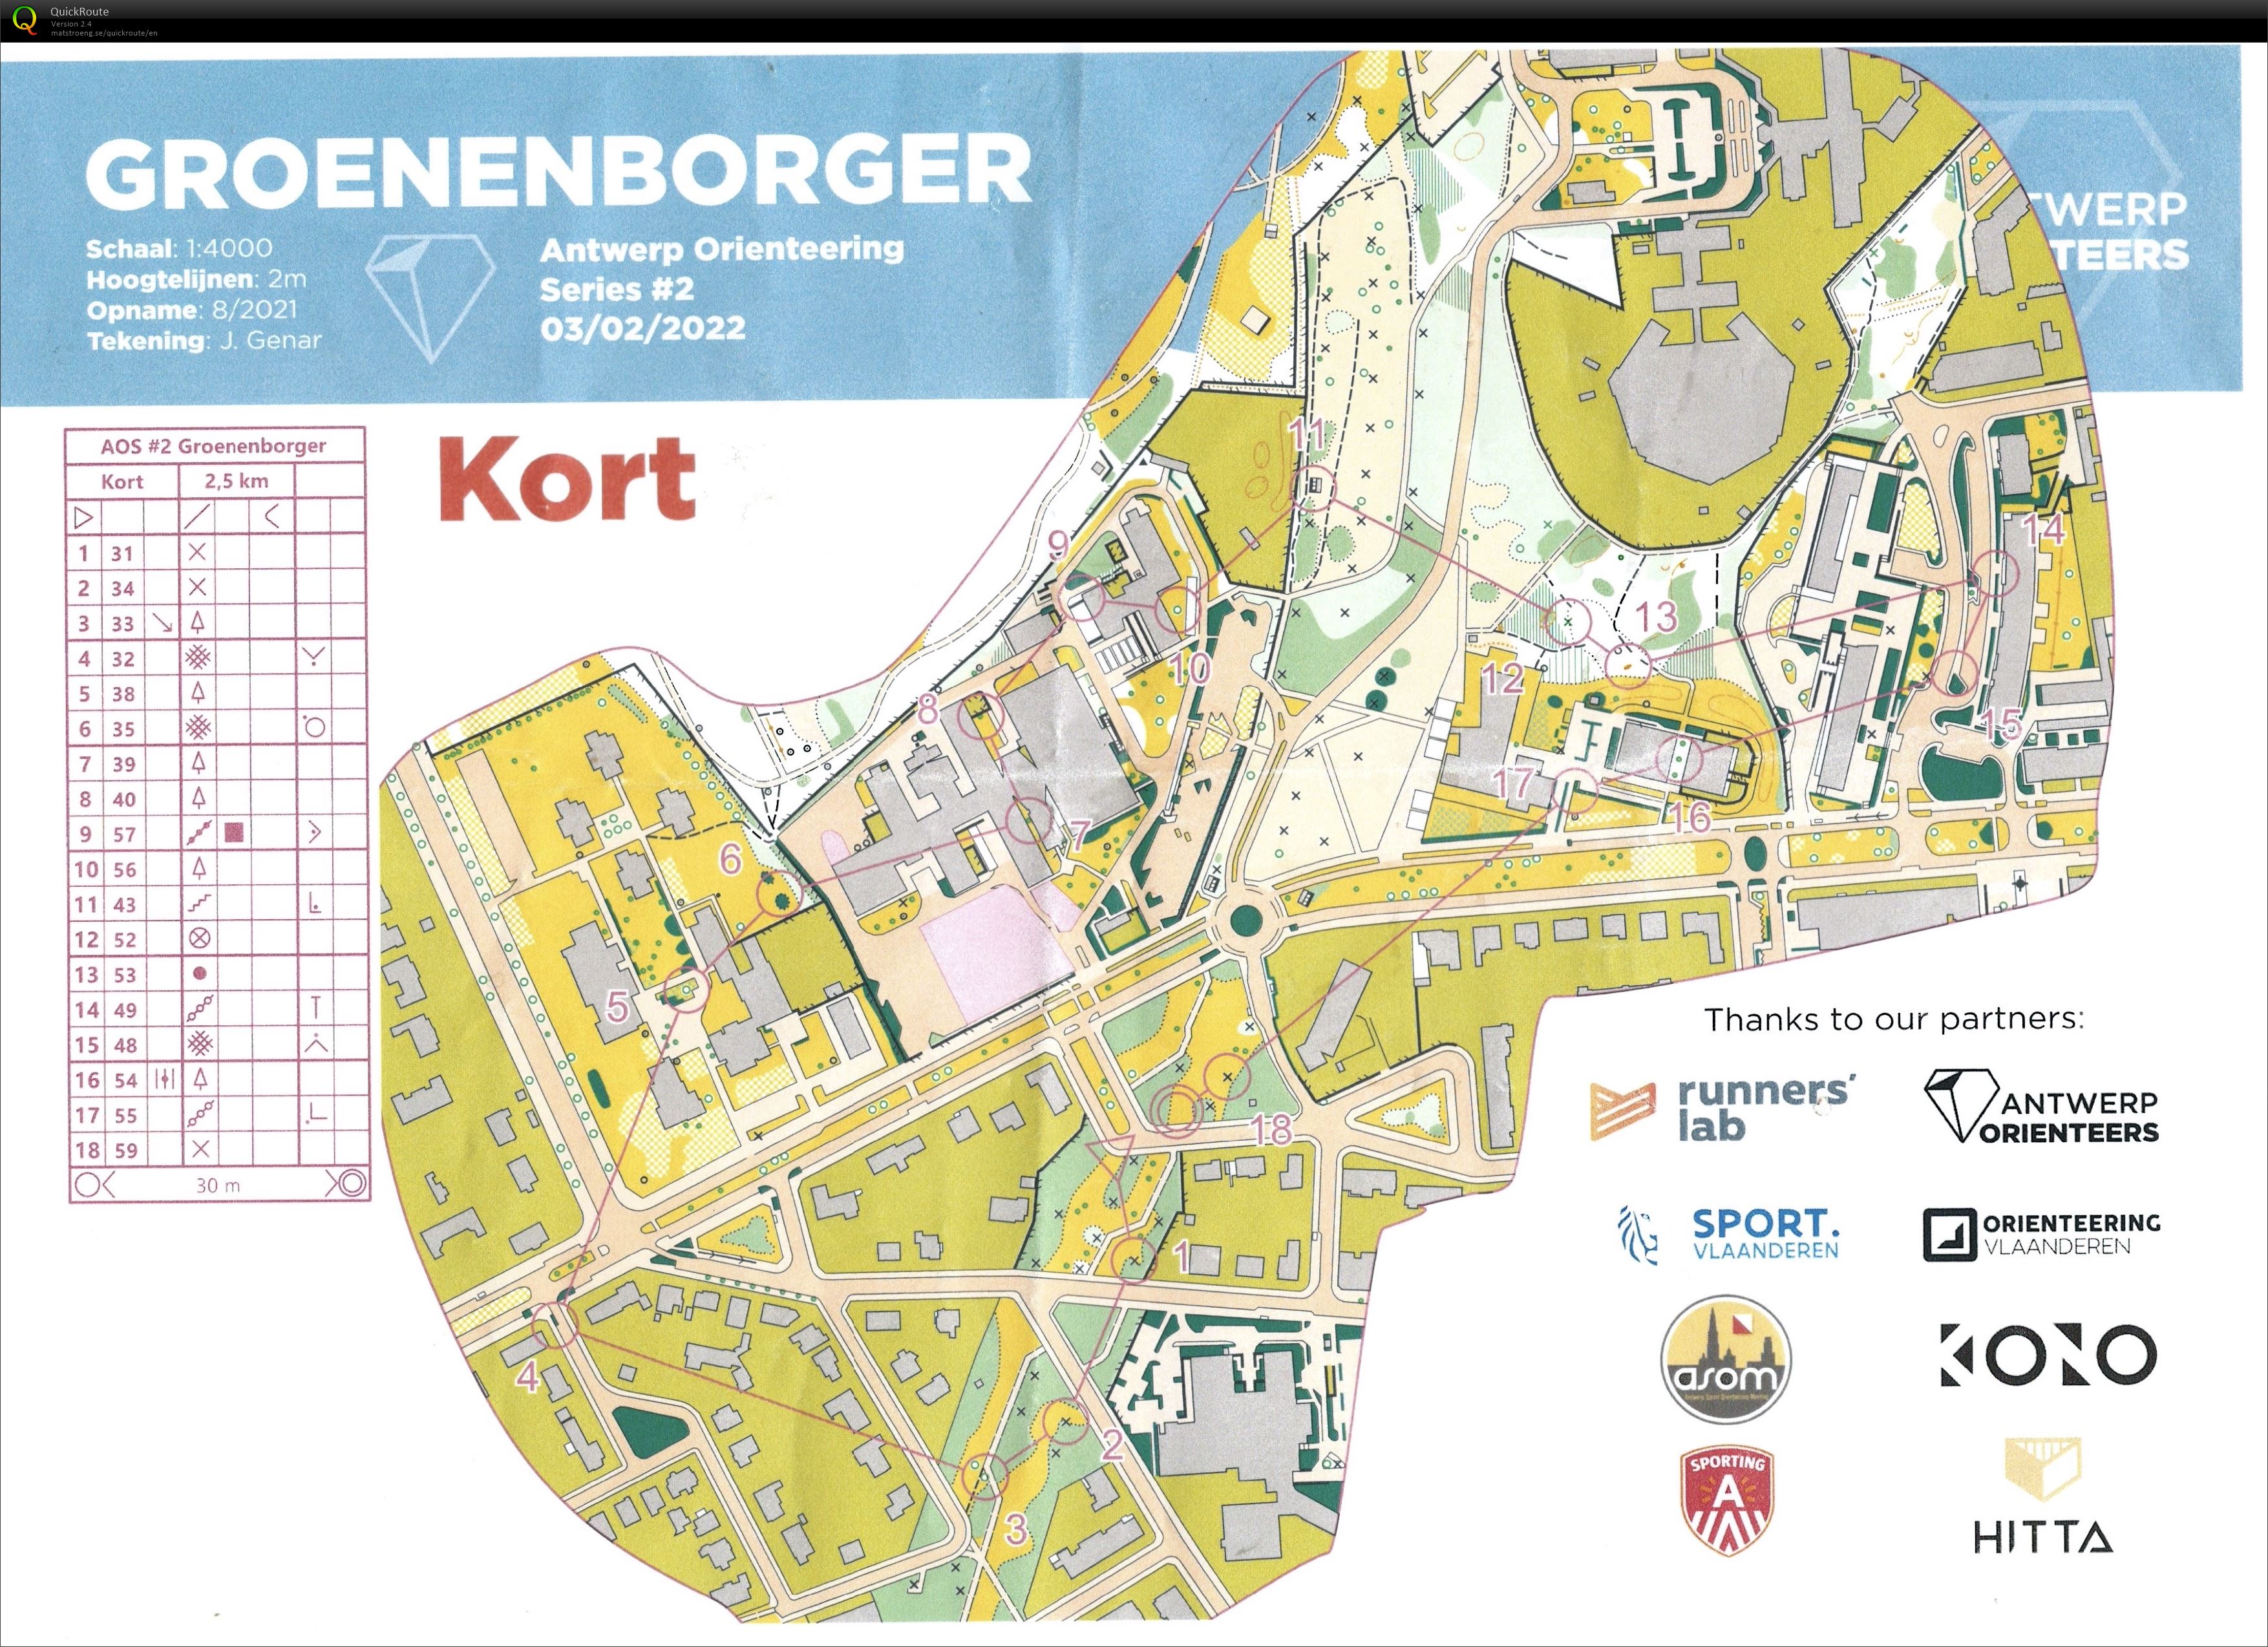 Antwerp Orienteering Series - Groenenborger - Kort (03-02-2022)